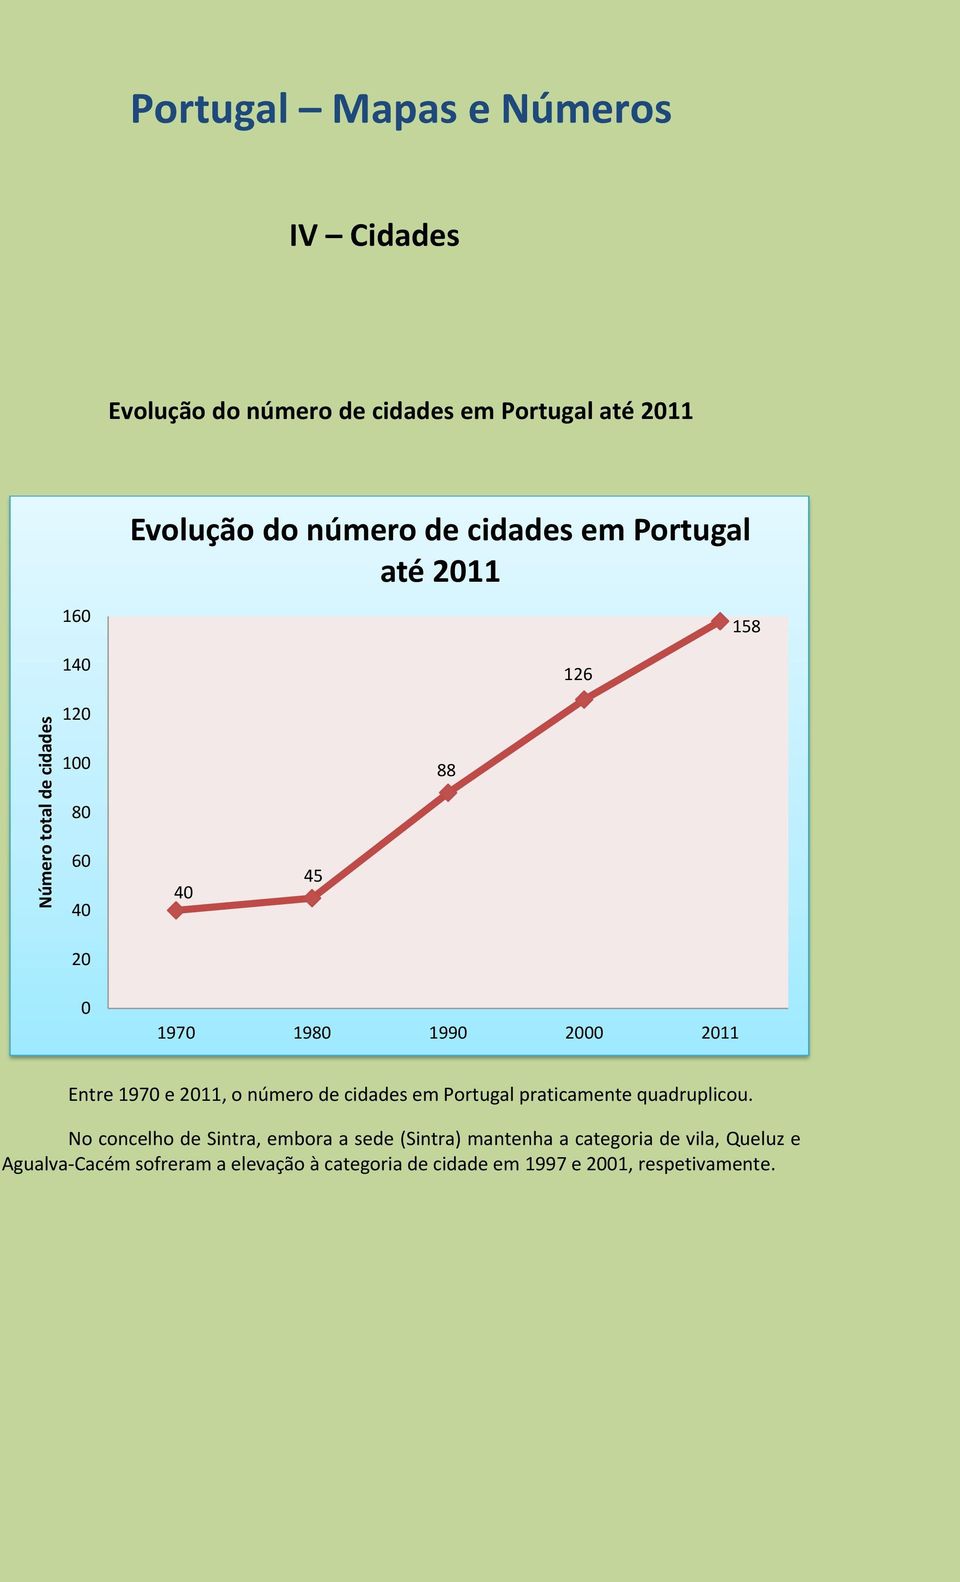 2011, o número de cidades em Portugal praticamente quadruplicou.